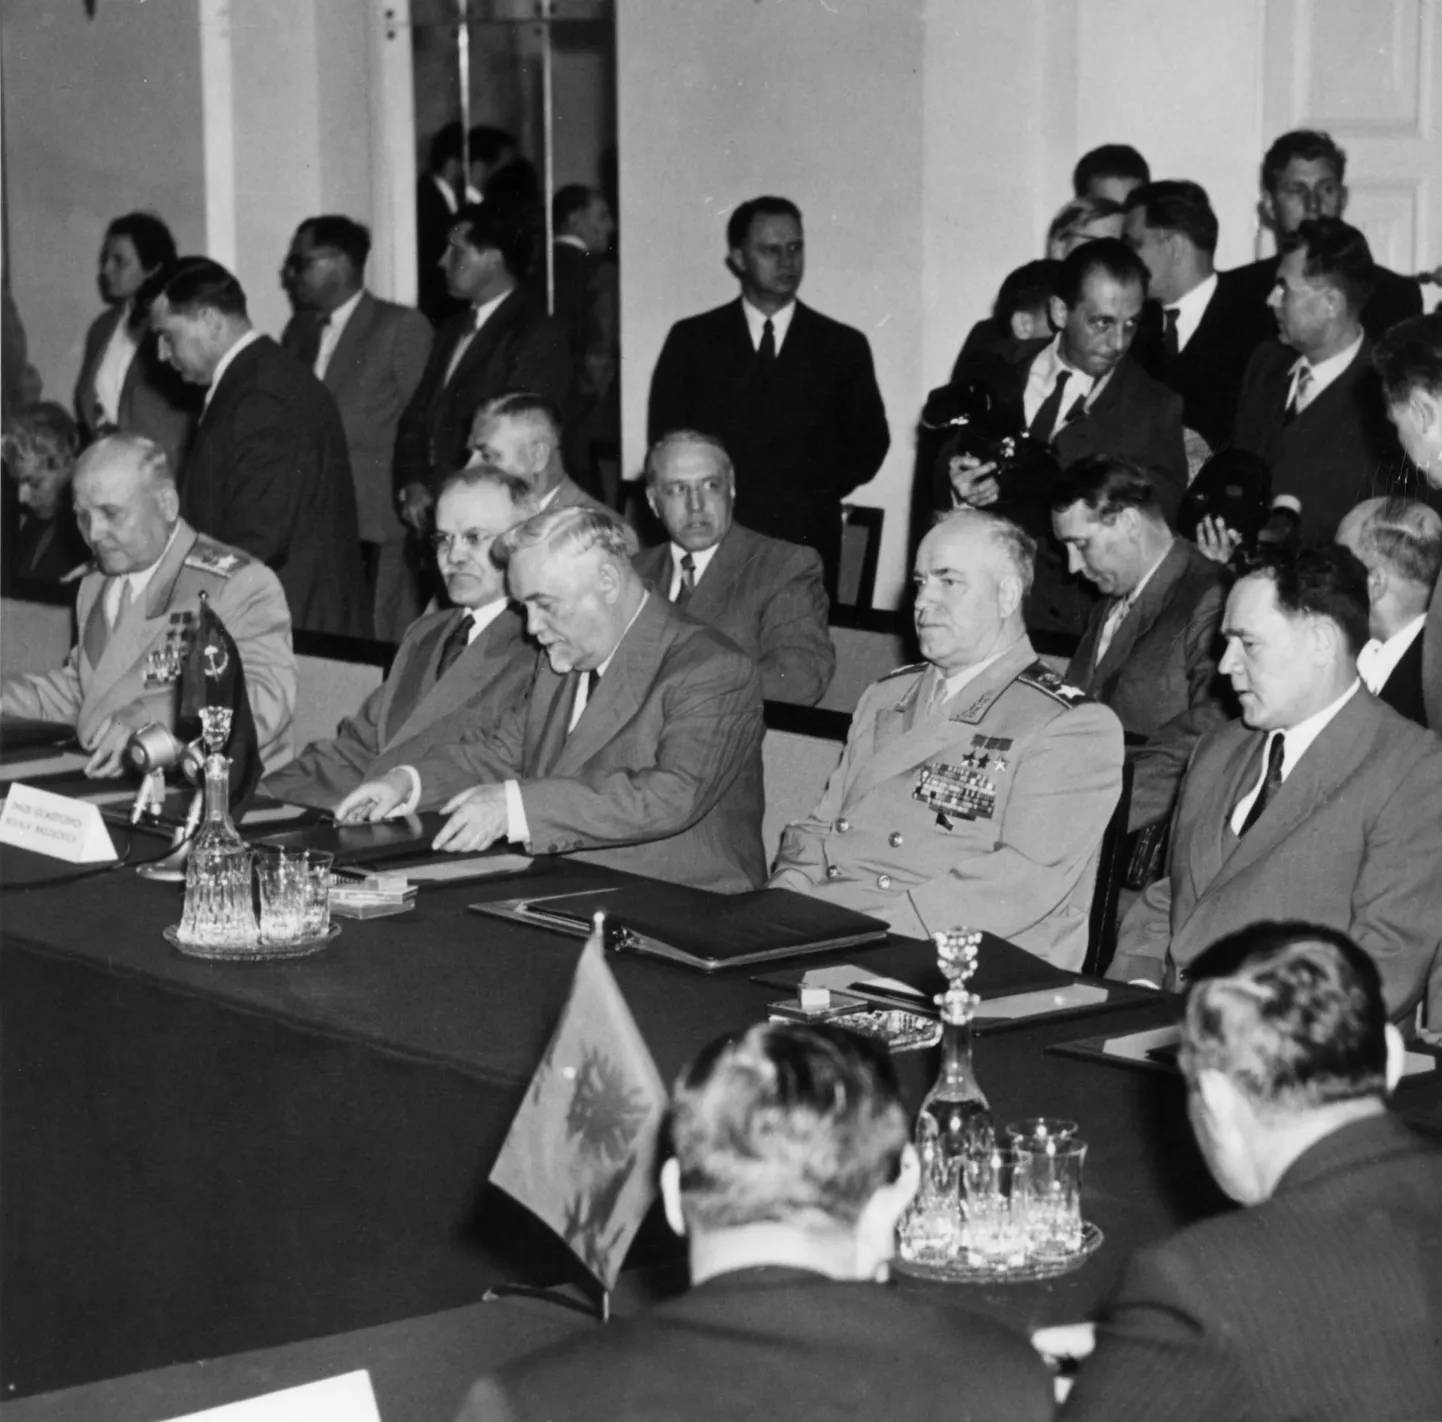 11.–14. maini 1955 olid Varssavis koos Nõukogude Liidu ning Albaania, Bulgaaria, Ida-Saksamaa, Poola, Rumeenia, Tšehhoslovakkia ja Ungari delegatsioonid, et kirjutada alla sõjalise liidu loonud Varssavi paktile. Pildil konverentsi eelviimasel päeval Nõukogude Liidu delegatsioon: vasakult ministrite nõukogu aseesimees ja välisminister Vjatšeslav Molotov, ministrite nõukogu esimees Nikolai Bulganin ja kaitseminister Georgi Žukov.